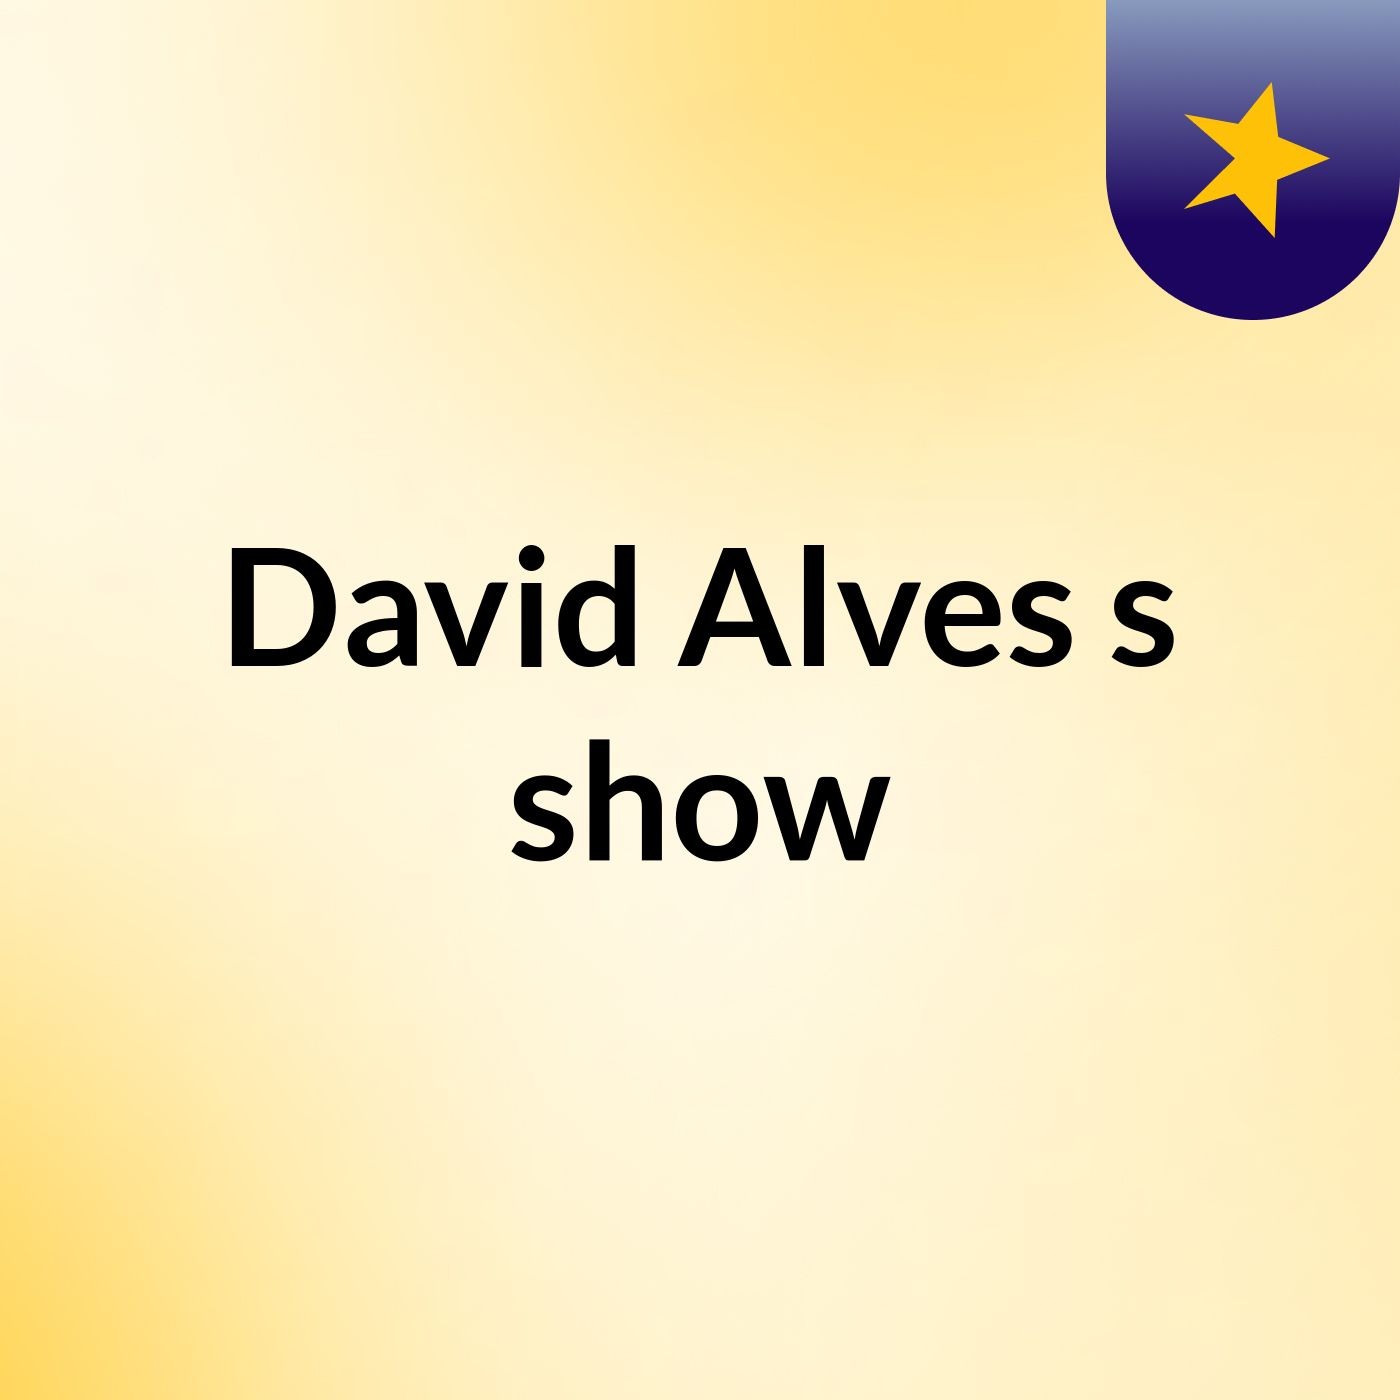 David Alves's show